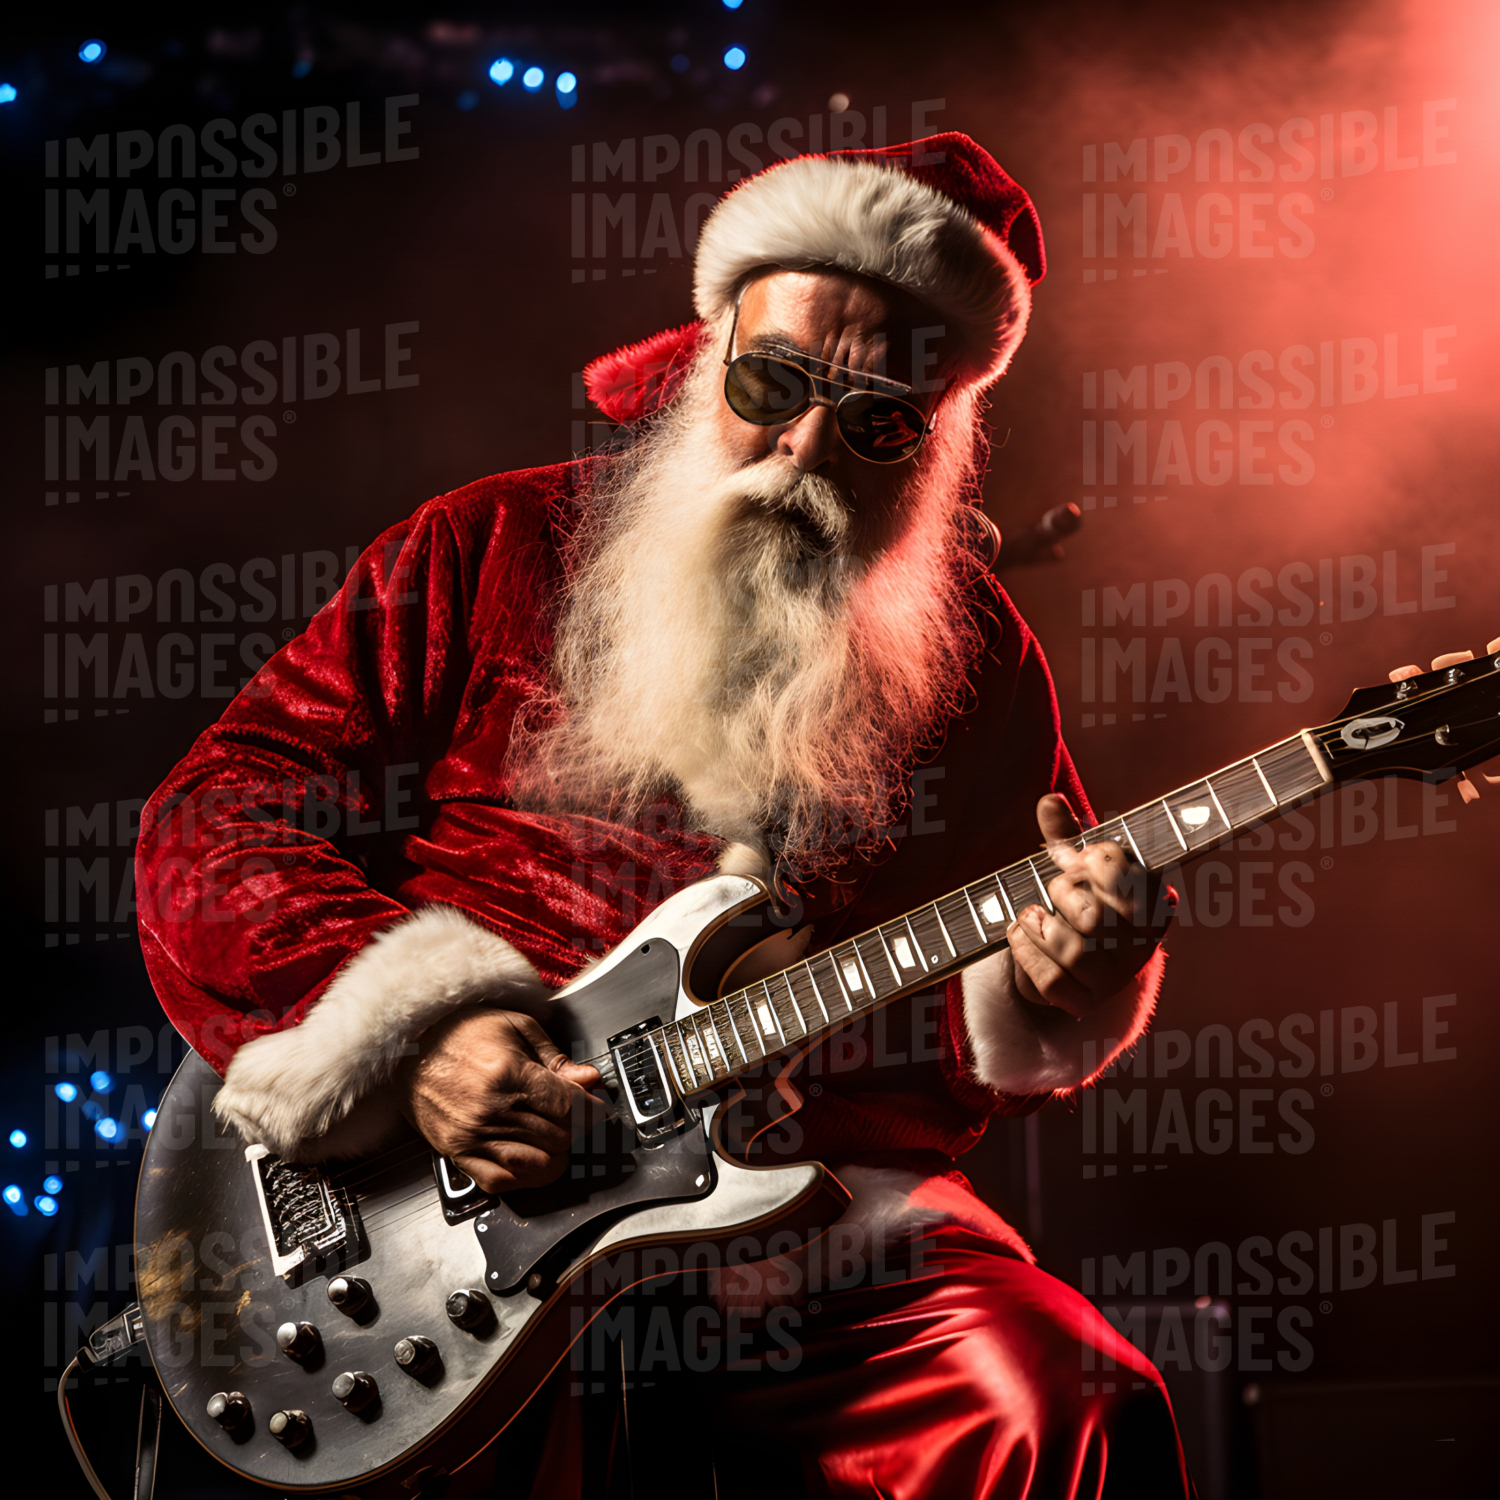 Cool Christmas Santa playing rock guitar on stage -  Cool Santa rocks out on stage, playing electric guitar and spreading Christmas cheer.